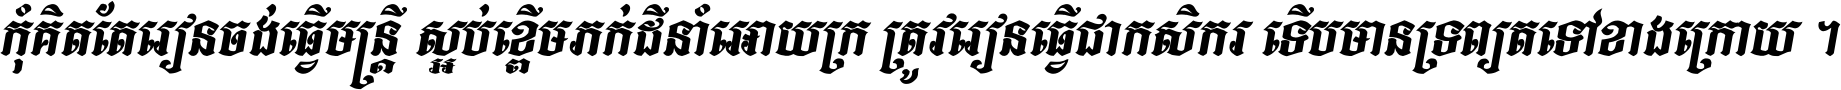 Kh Baphnom Limon F3 Italic